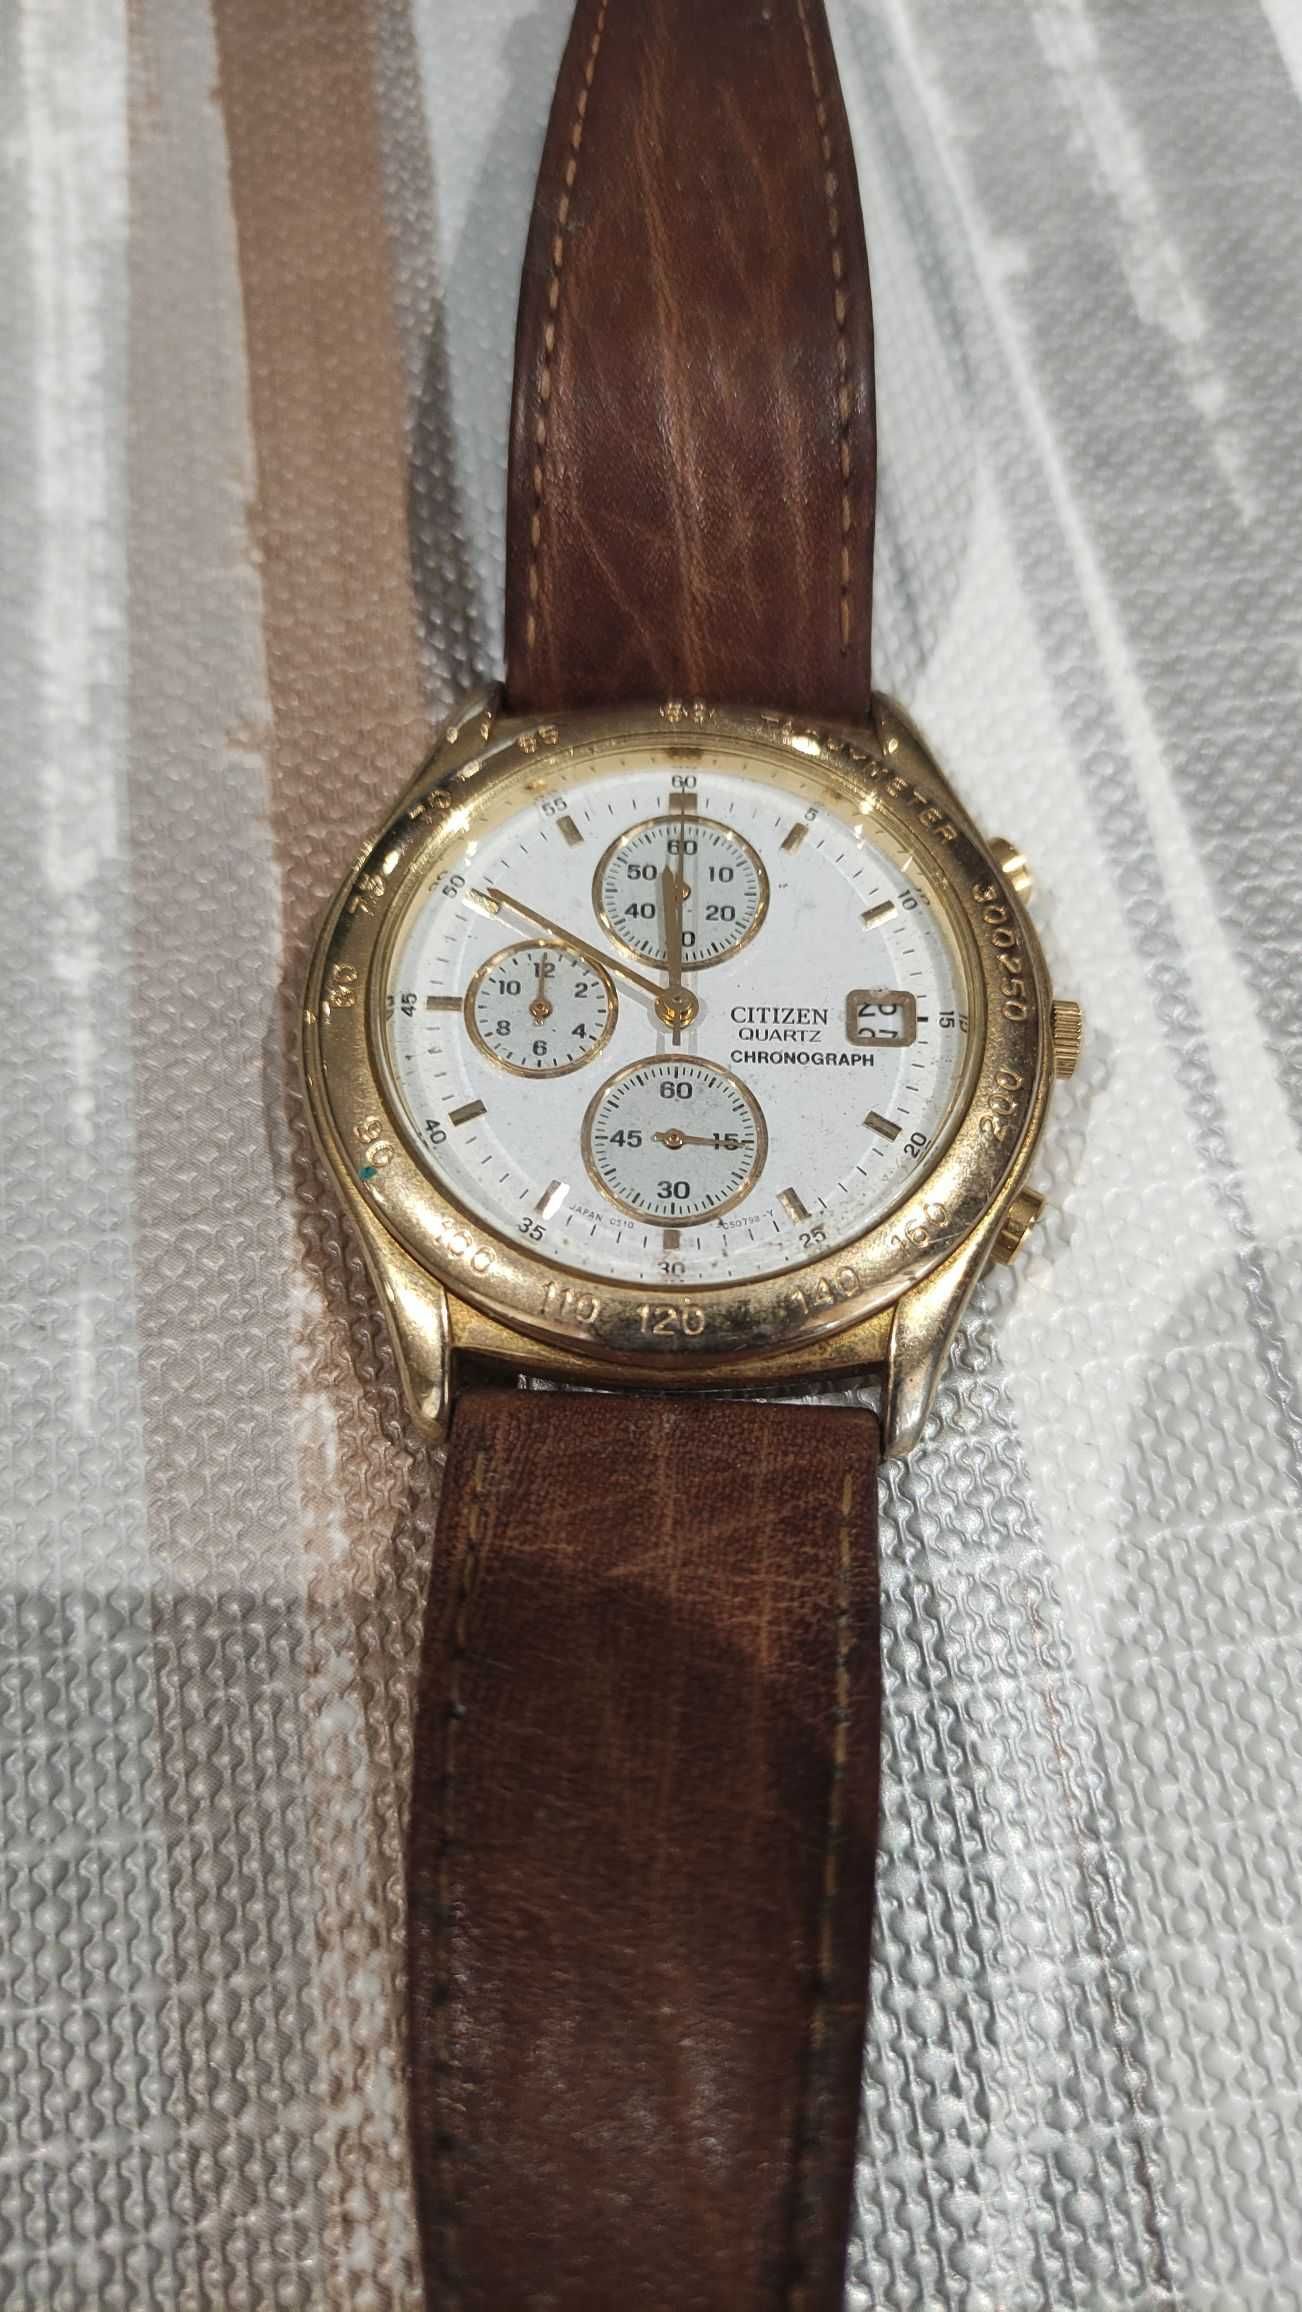 6 relógos (Citizen, D&G, Massimo Dutti, Swatch)